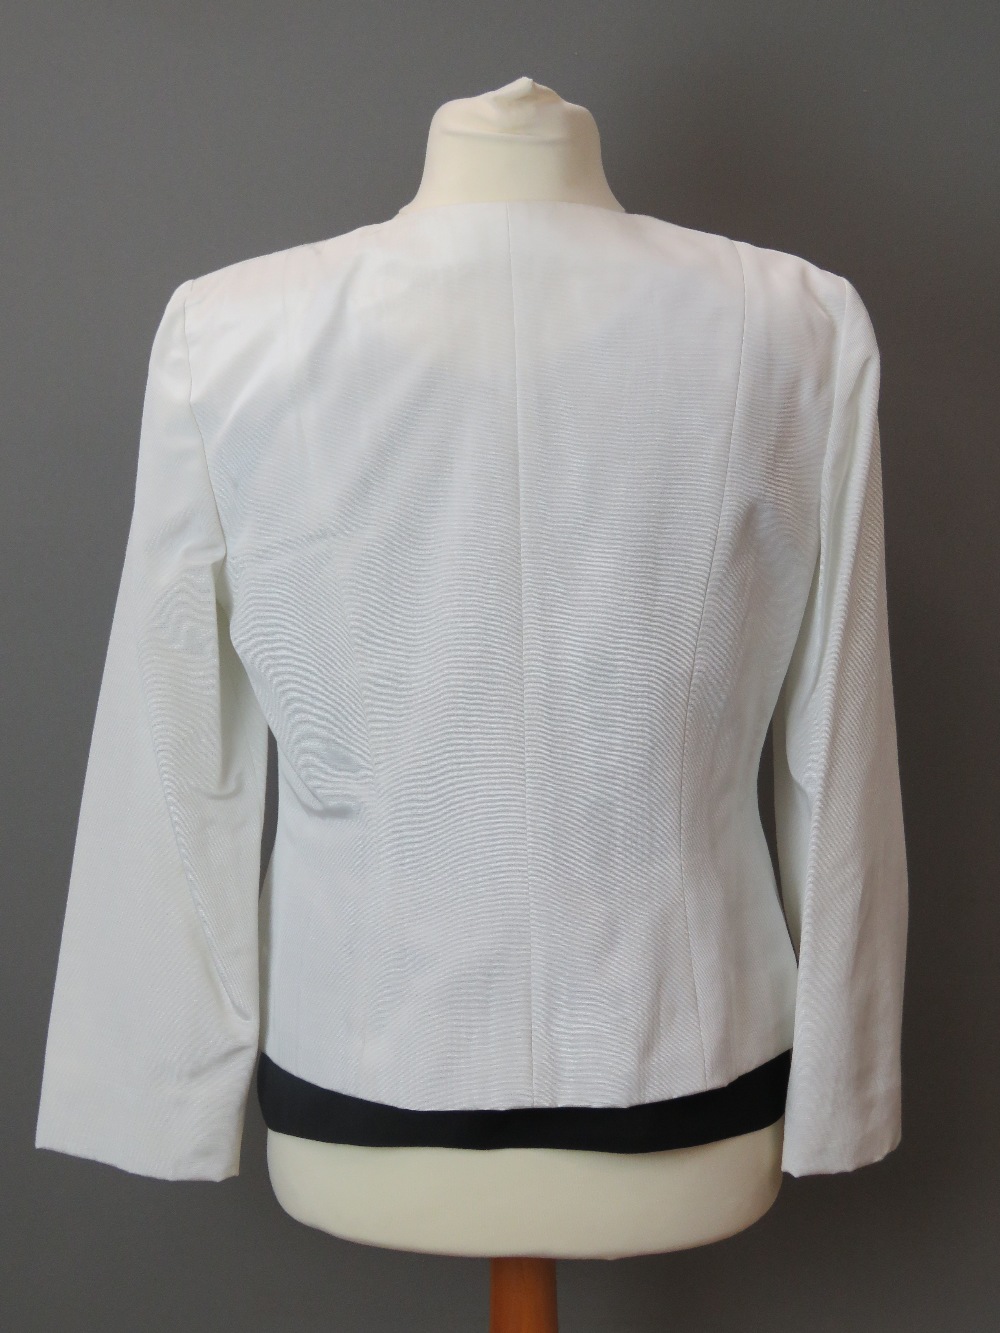 Frank Usher; 50% cotton ladies white jacket, UK size 14. - Image 2 of 7